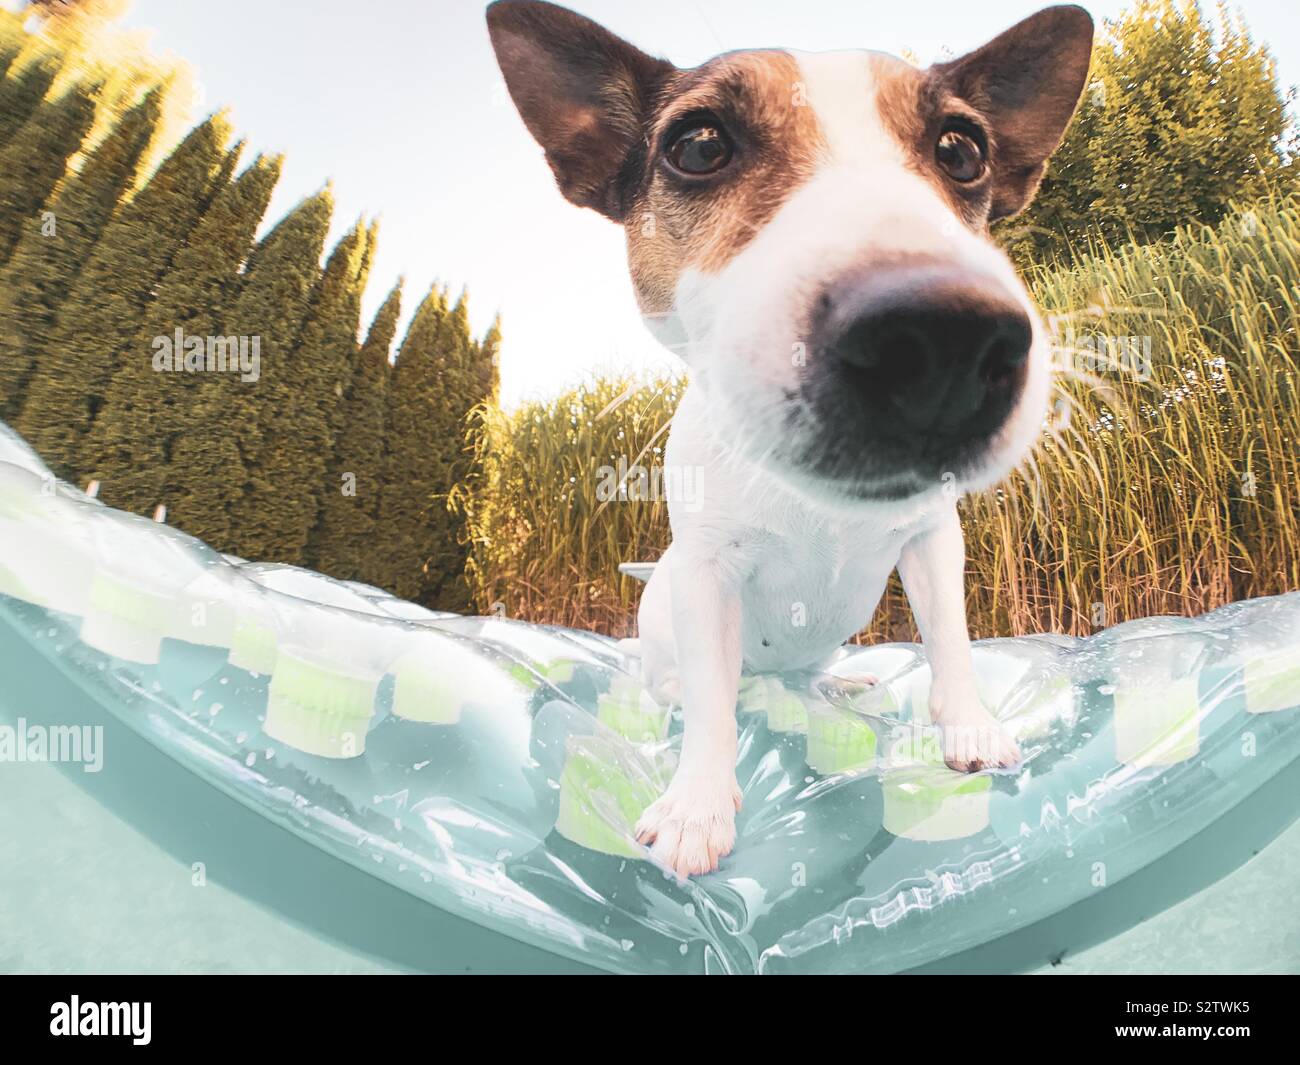 Nahaufnahme des niedlichen Gesichts des jungen Jack Russell Terrier im Freien auf einem aufblasbaren Pool in einem Hinterhof-Swimmingpool. Stockfoto